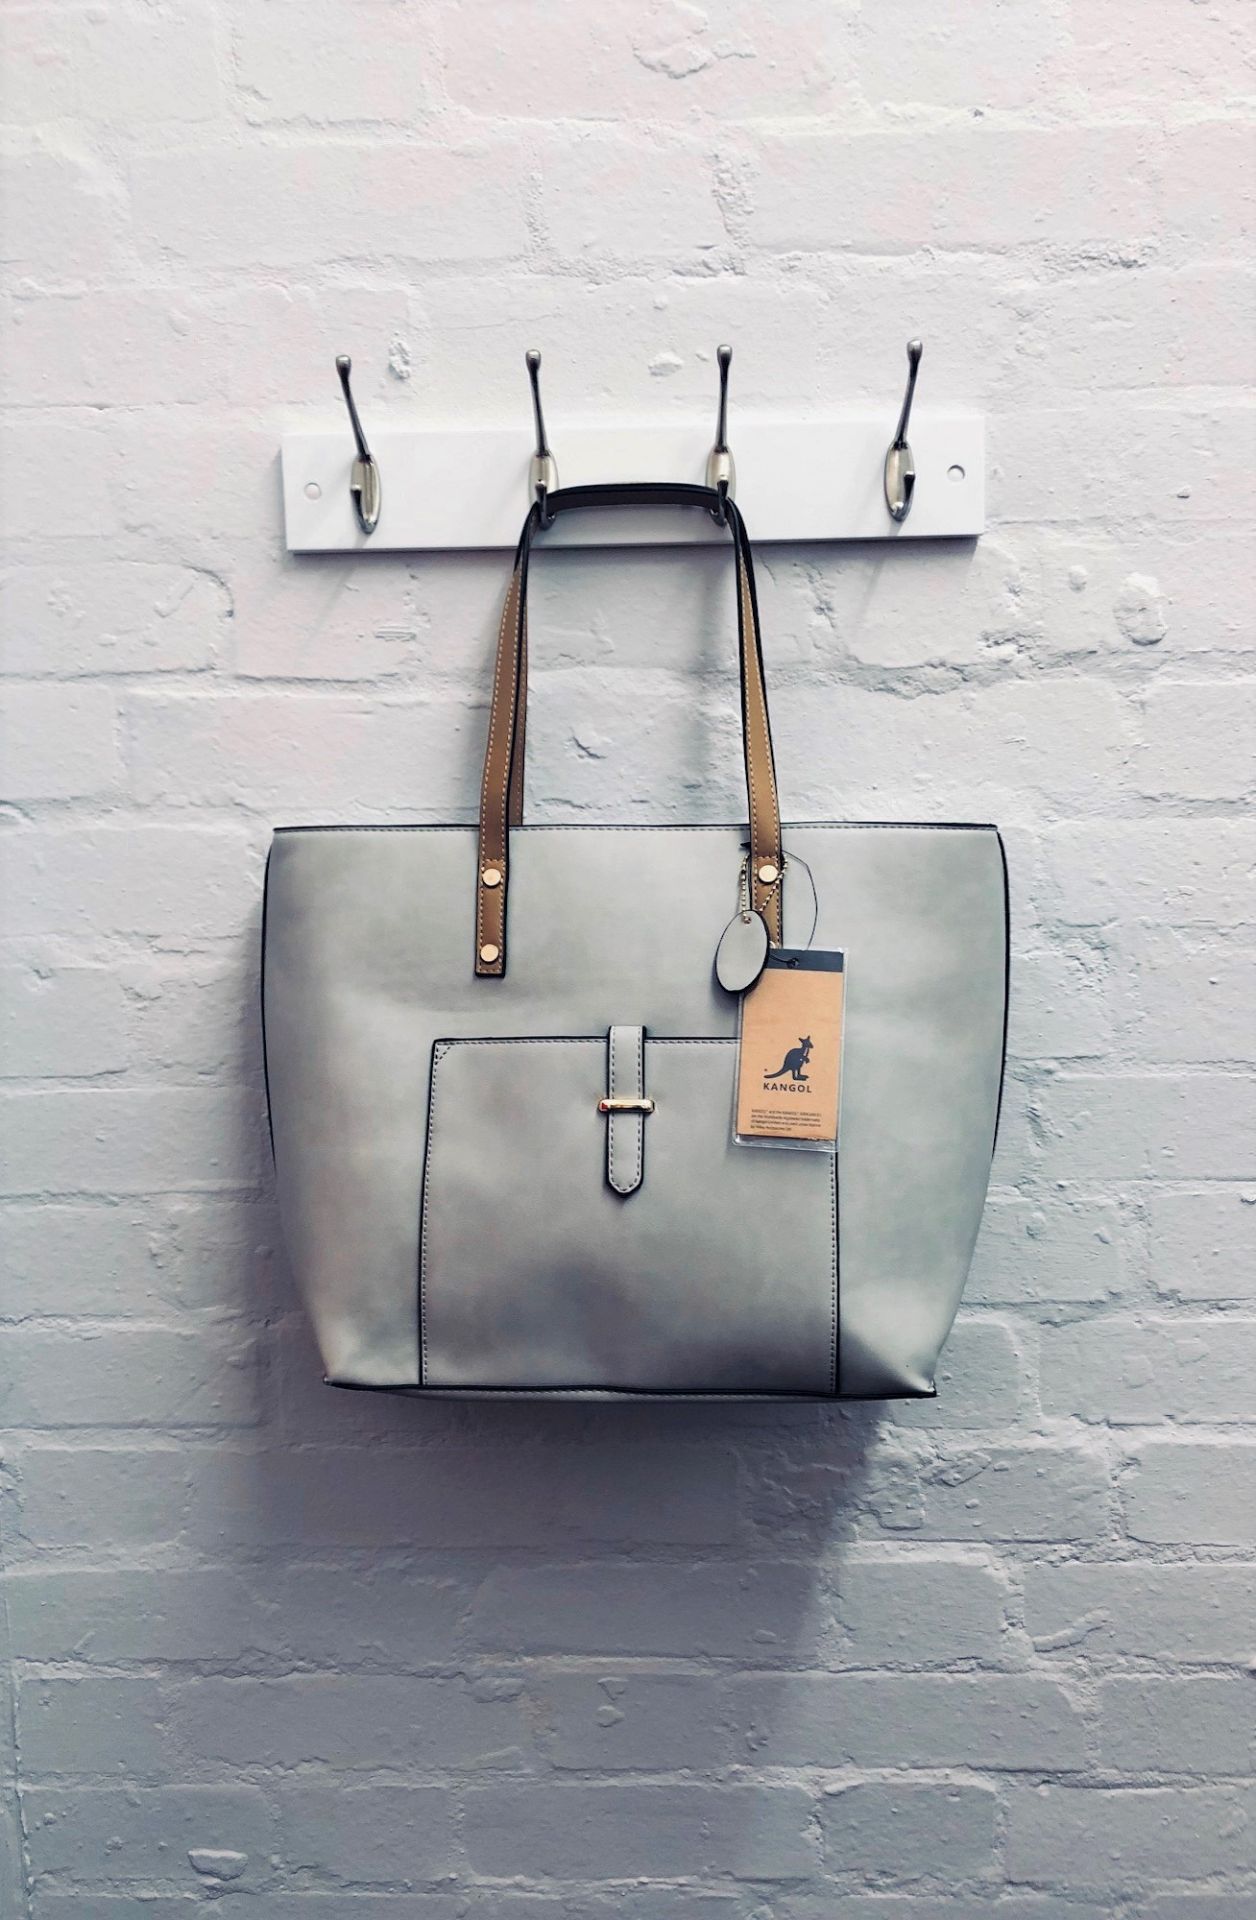 V Brand New Kangol Grey & Tan Trim Front Pocket Shopper Bag - Image 3 of 3